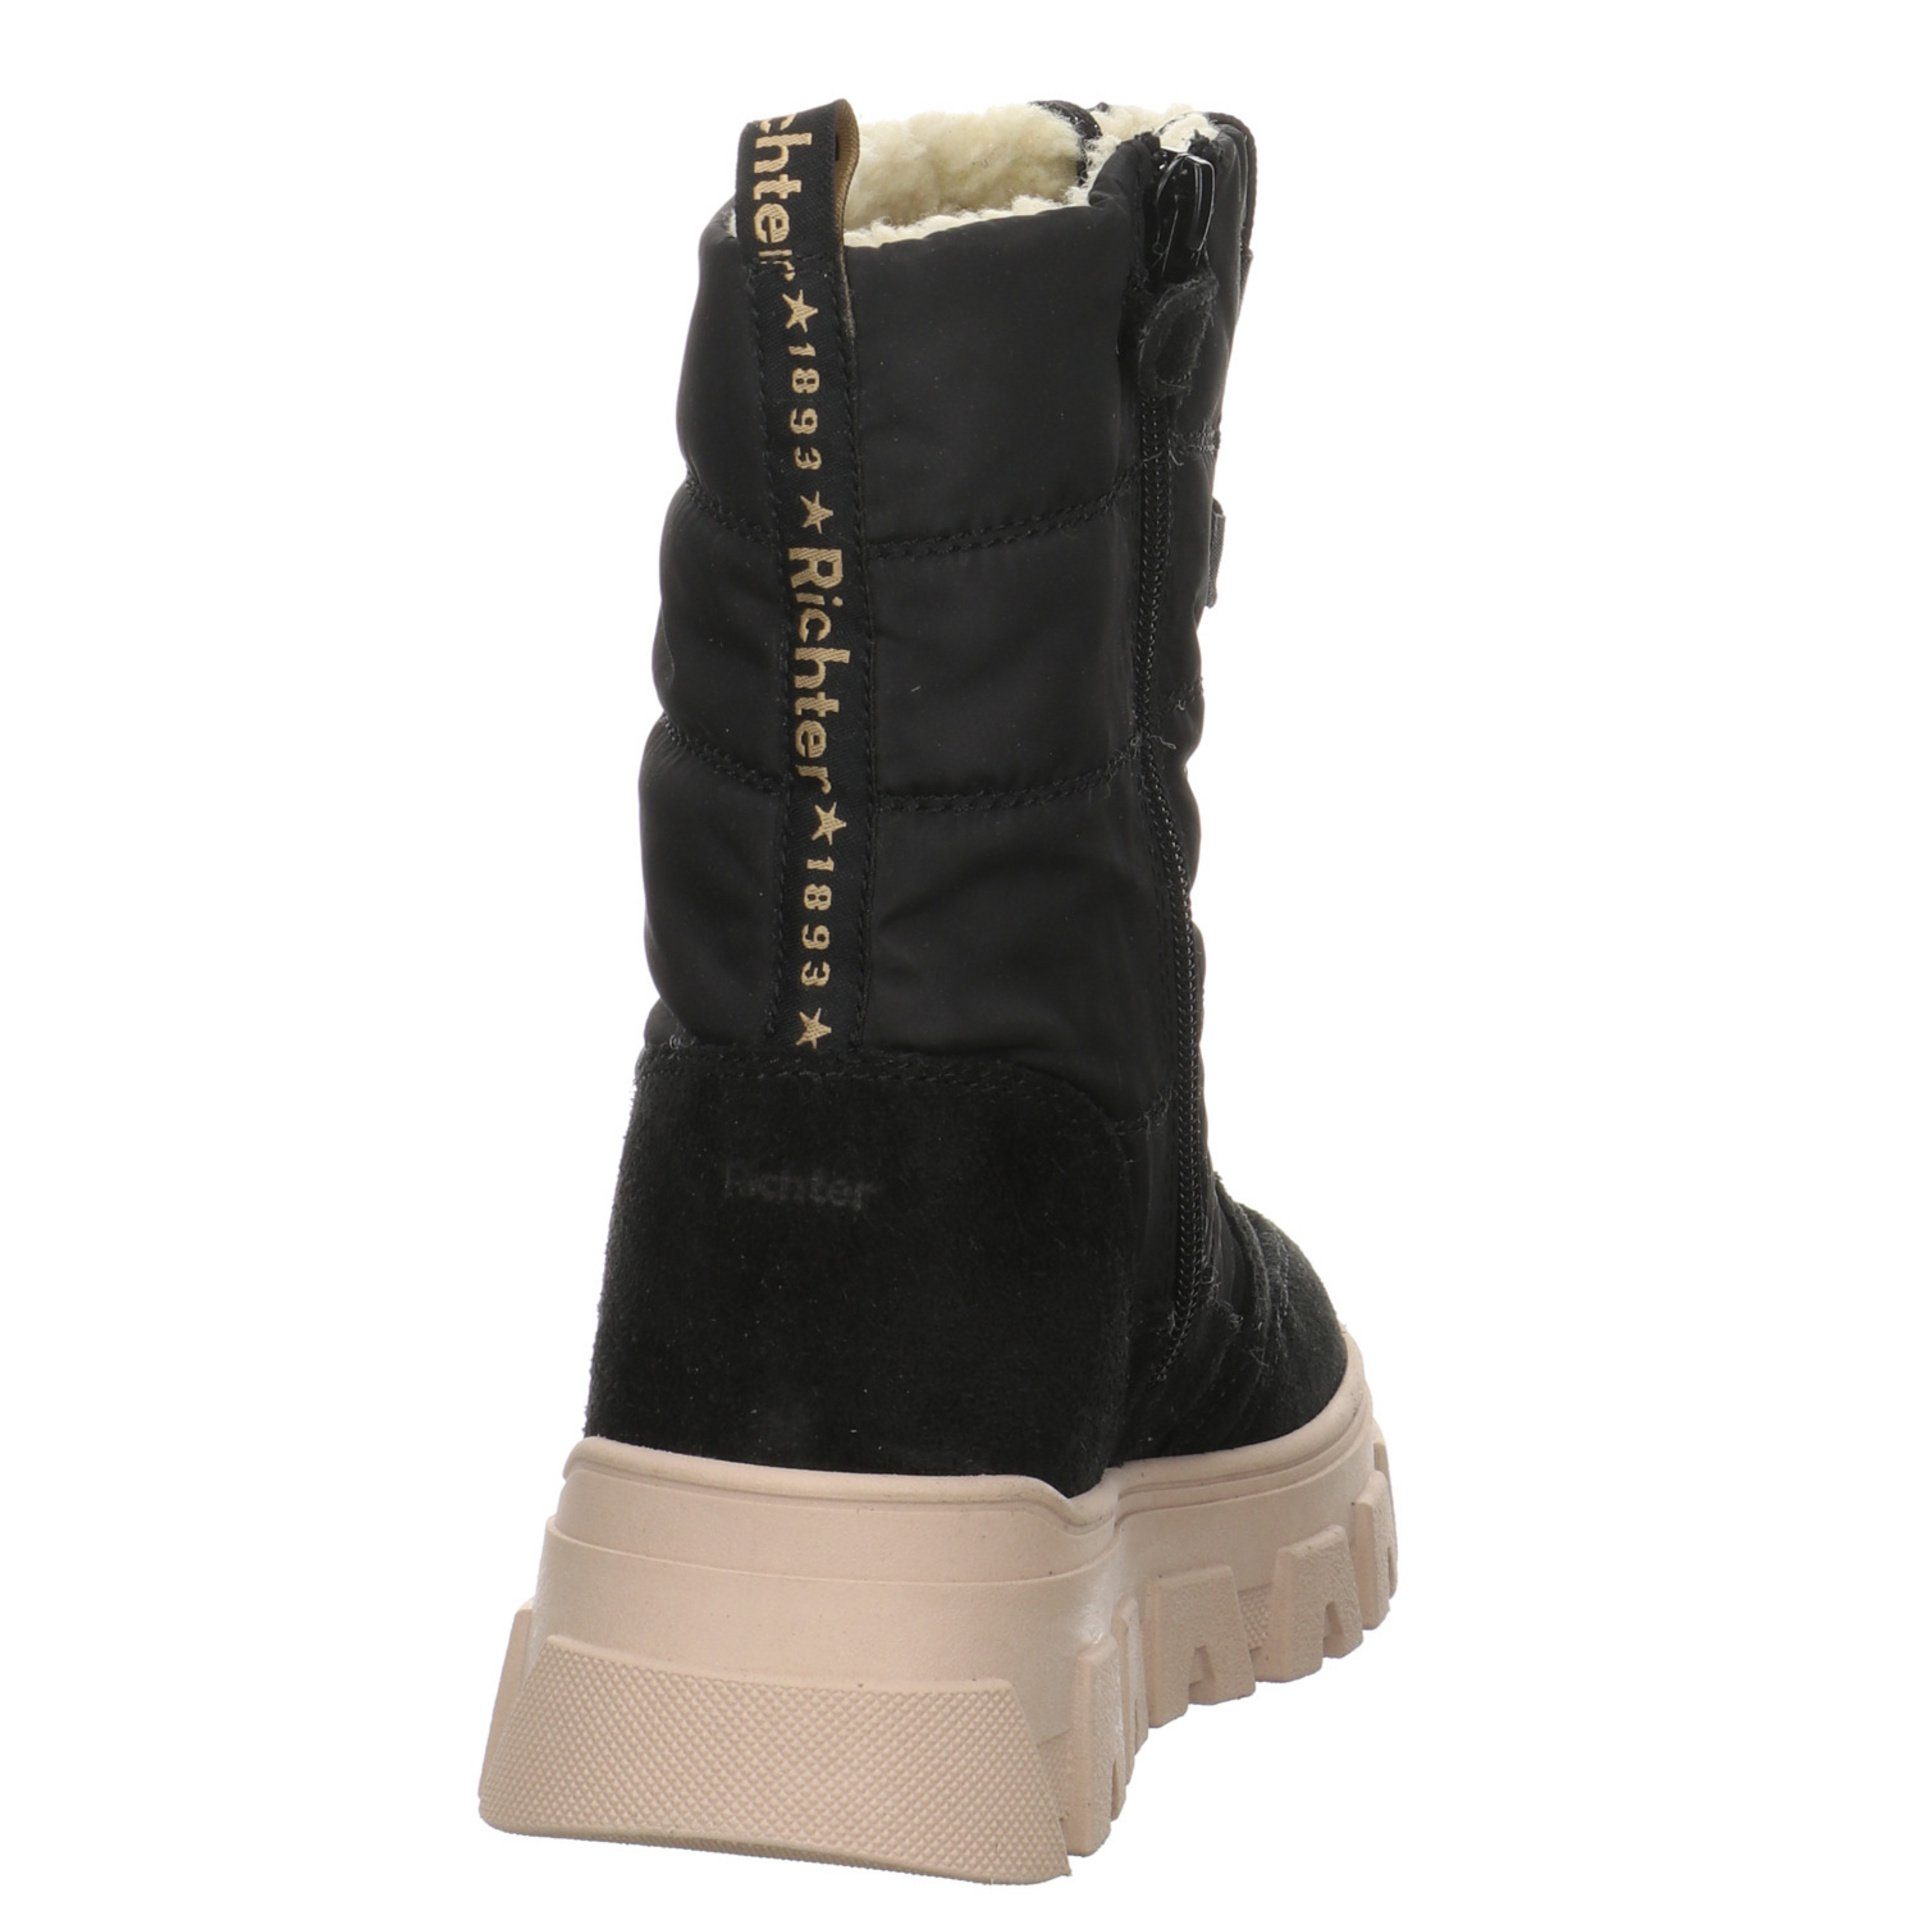 Schuhe Boots Kinderschuhe Leder-/Textilkombination Stiefelette Mädchen Richter Stiefel schwarz